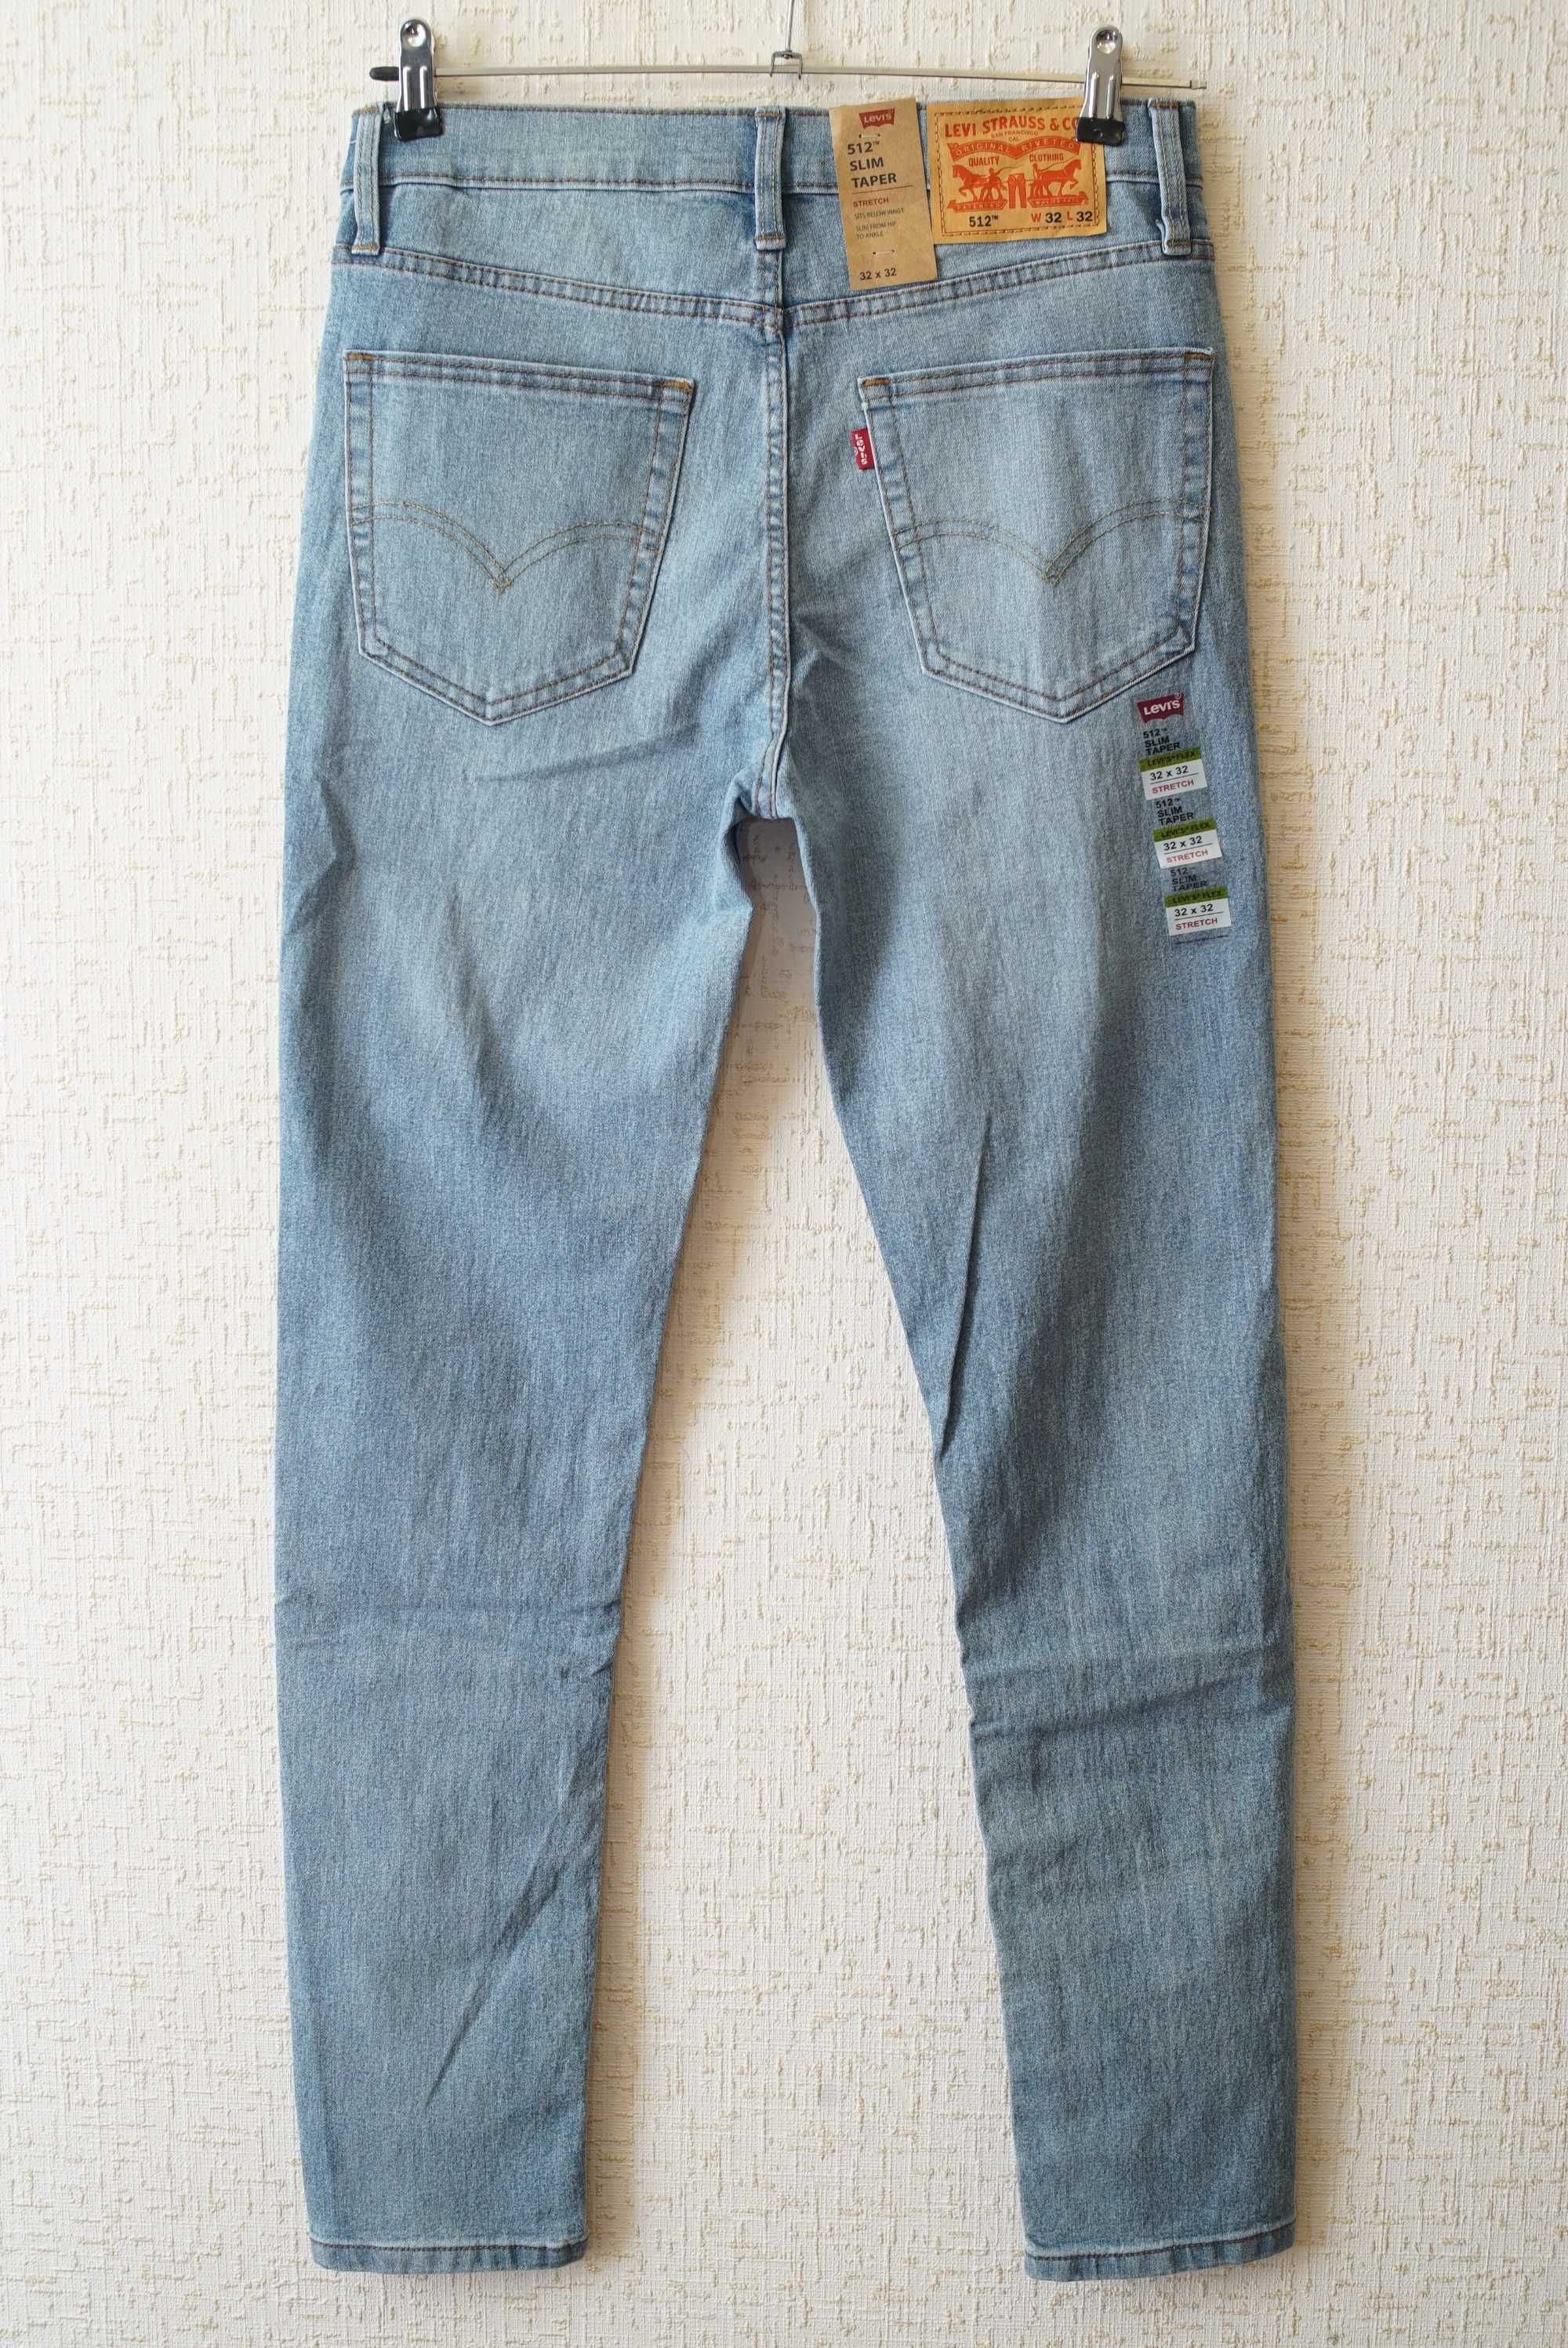 Мужские джинсы LEVI'S голубого цвета (512 slim taper)